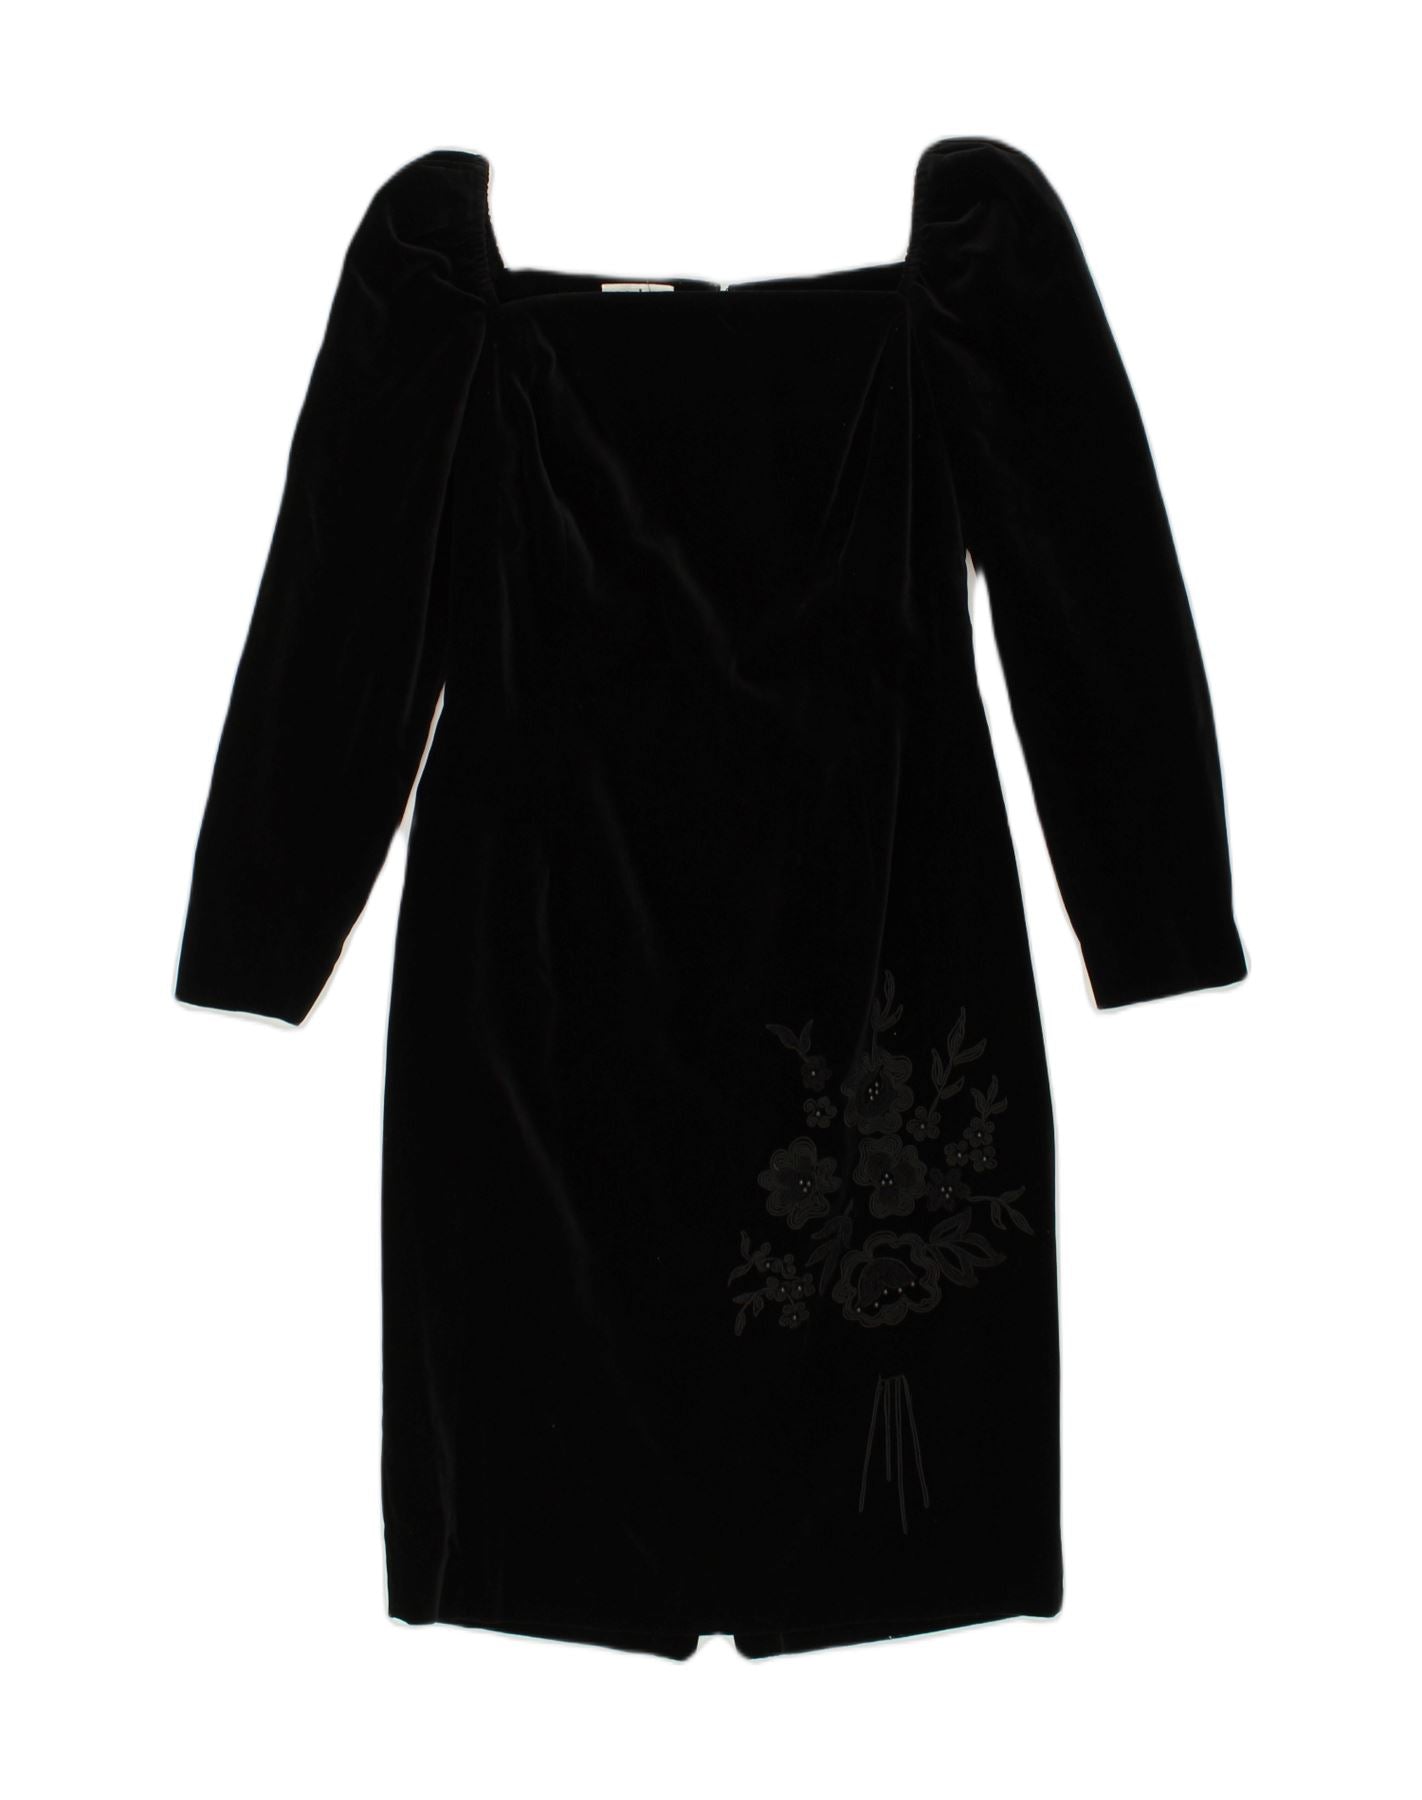 MODYVA Womens Long Sleeve Velvet Bodycon Dress UK 8 Small Black, Vintage &  Second-Hand Clothing Online